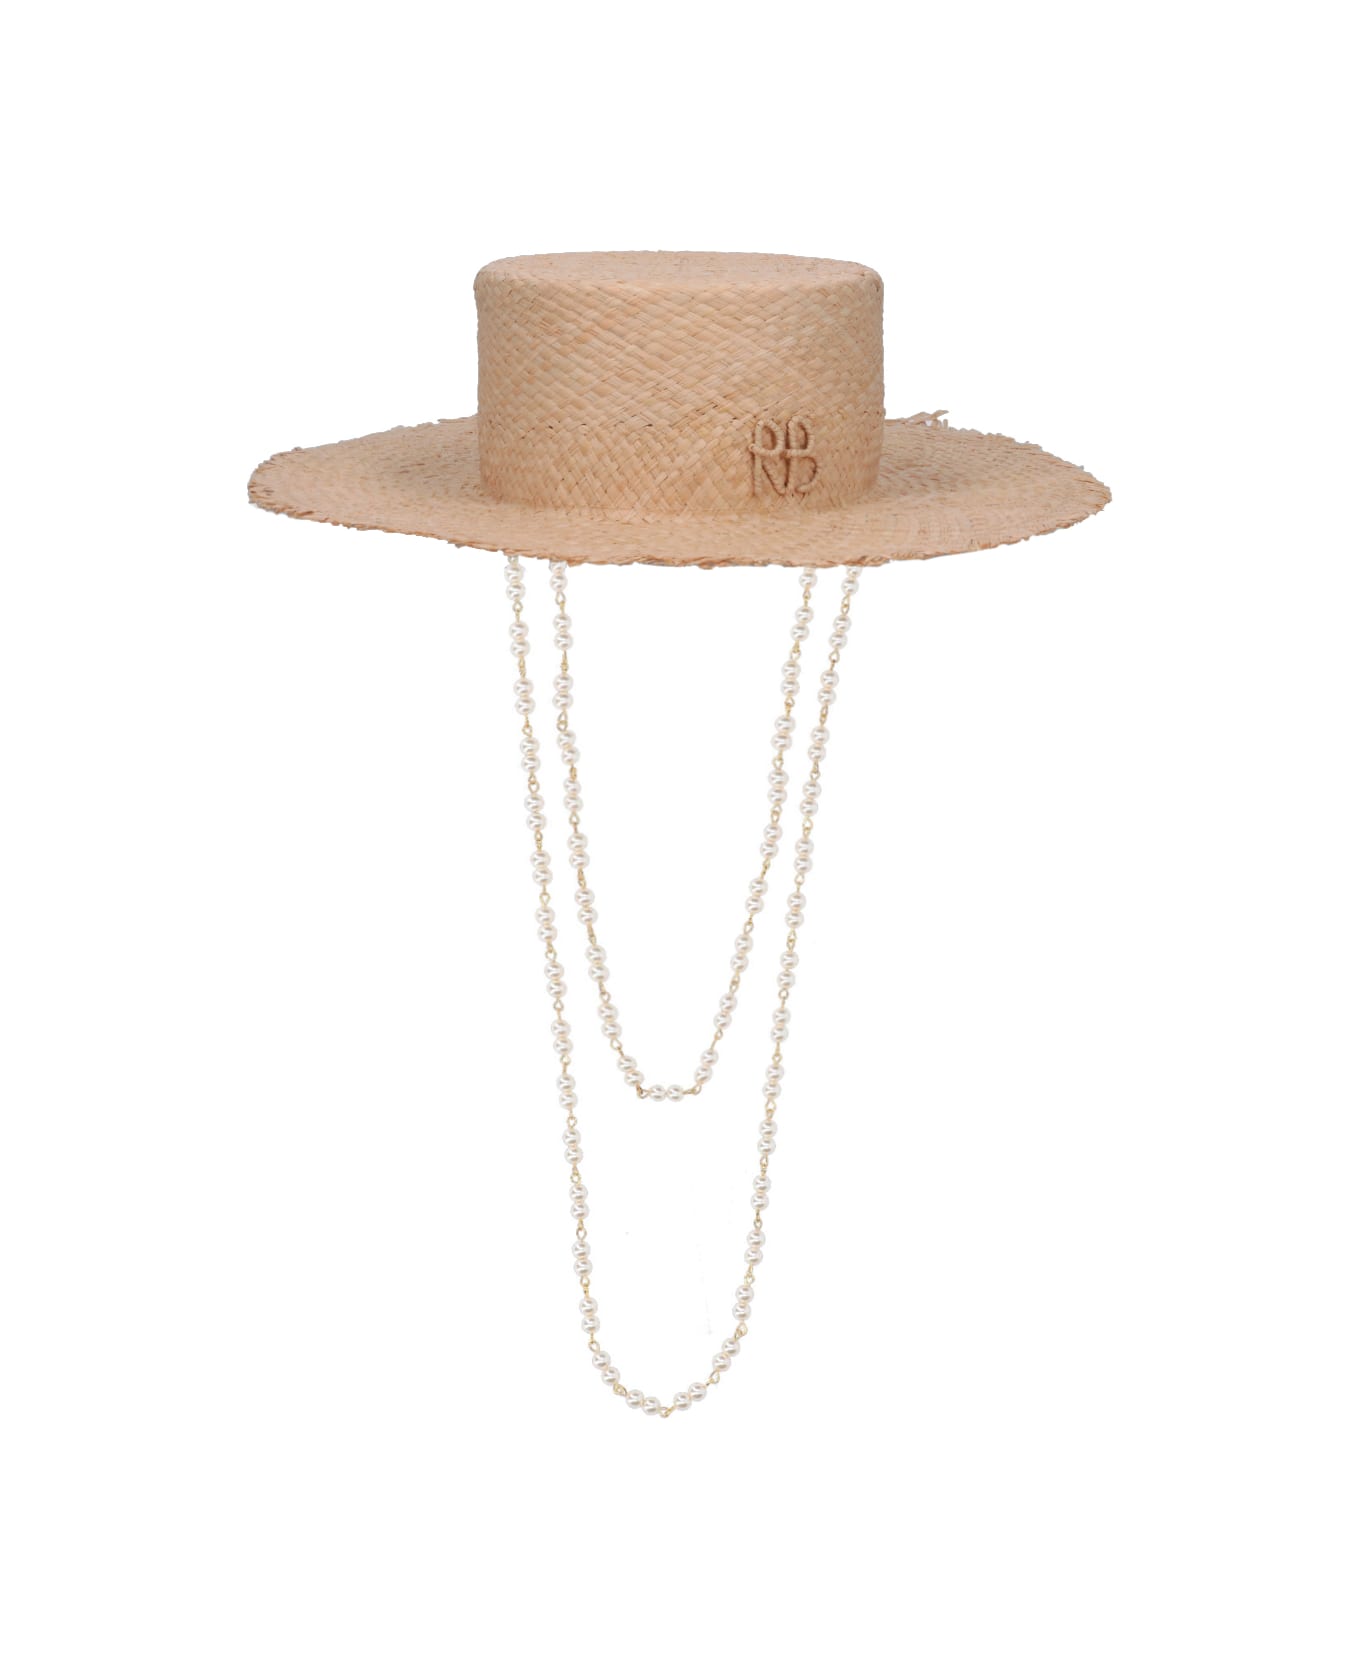 Ruslan Baginskiy Raffia Hat With Chain - Beige 帽子